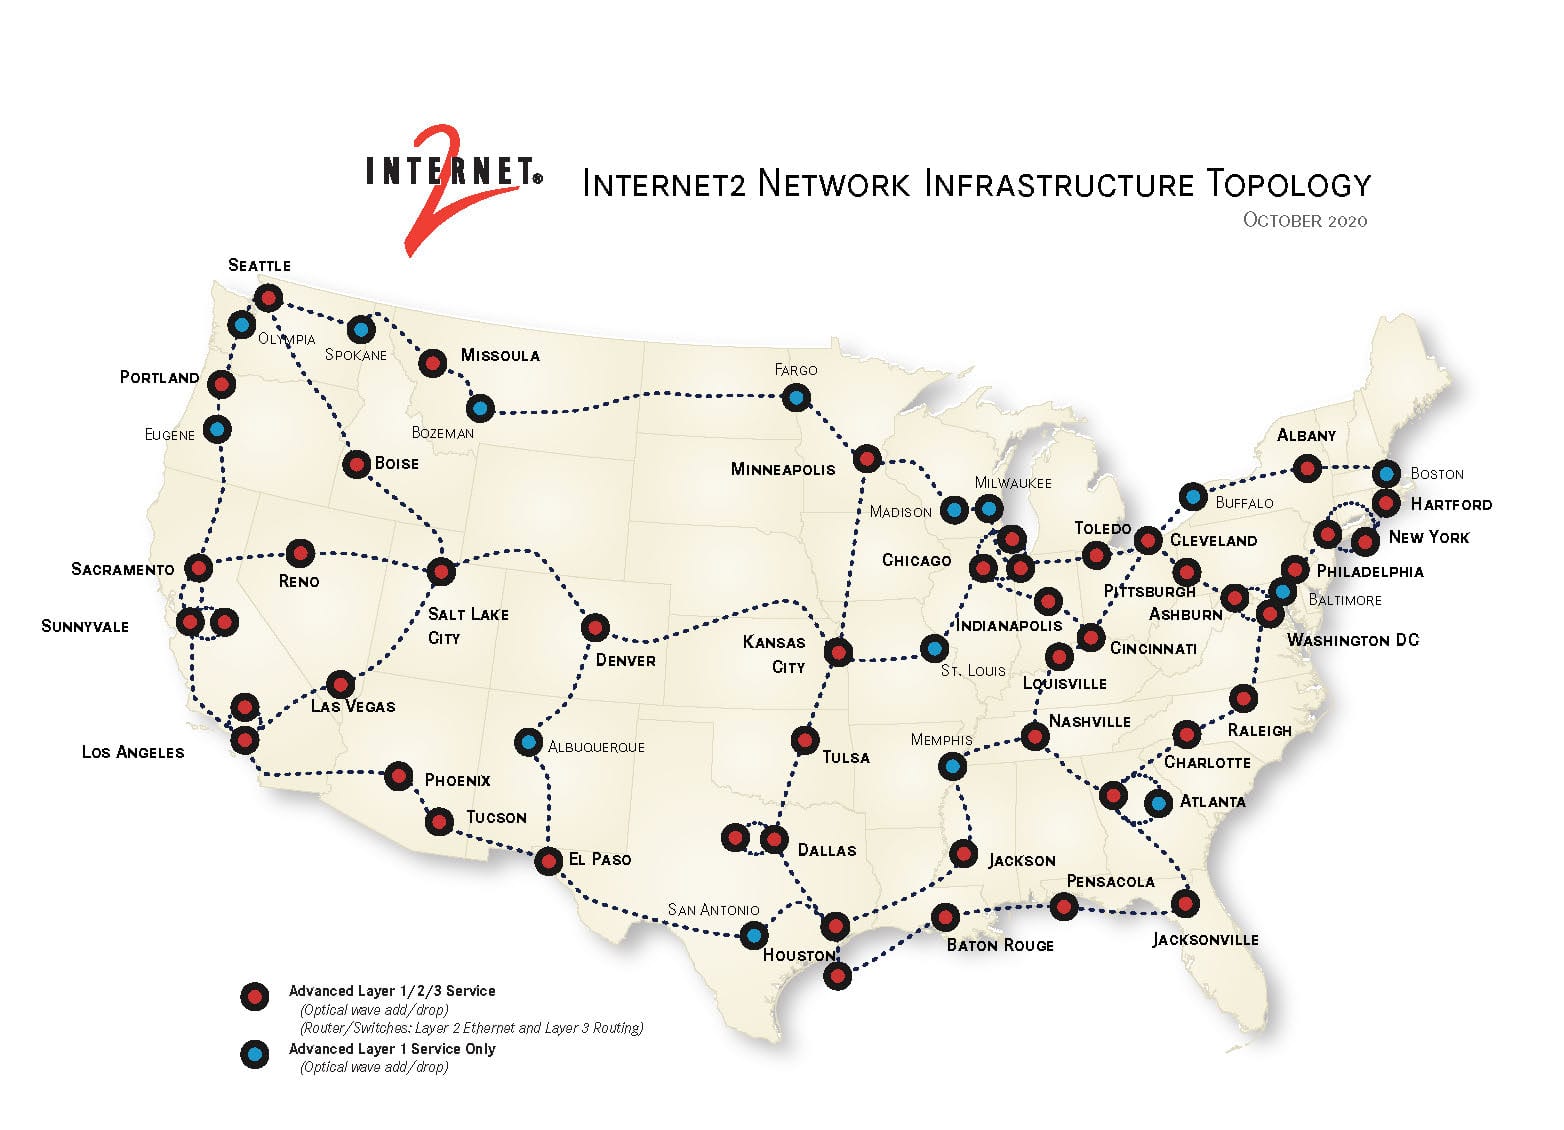 Internet2 Network Infrastructure